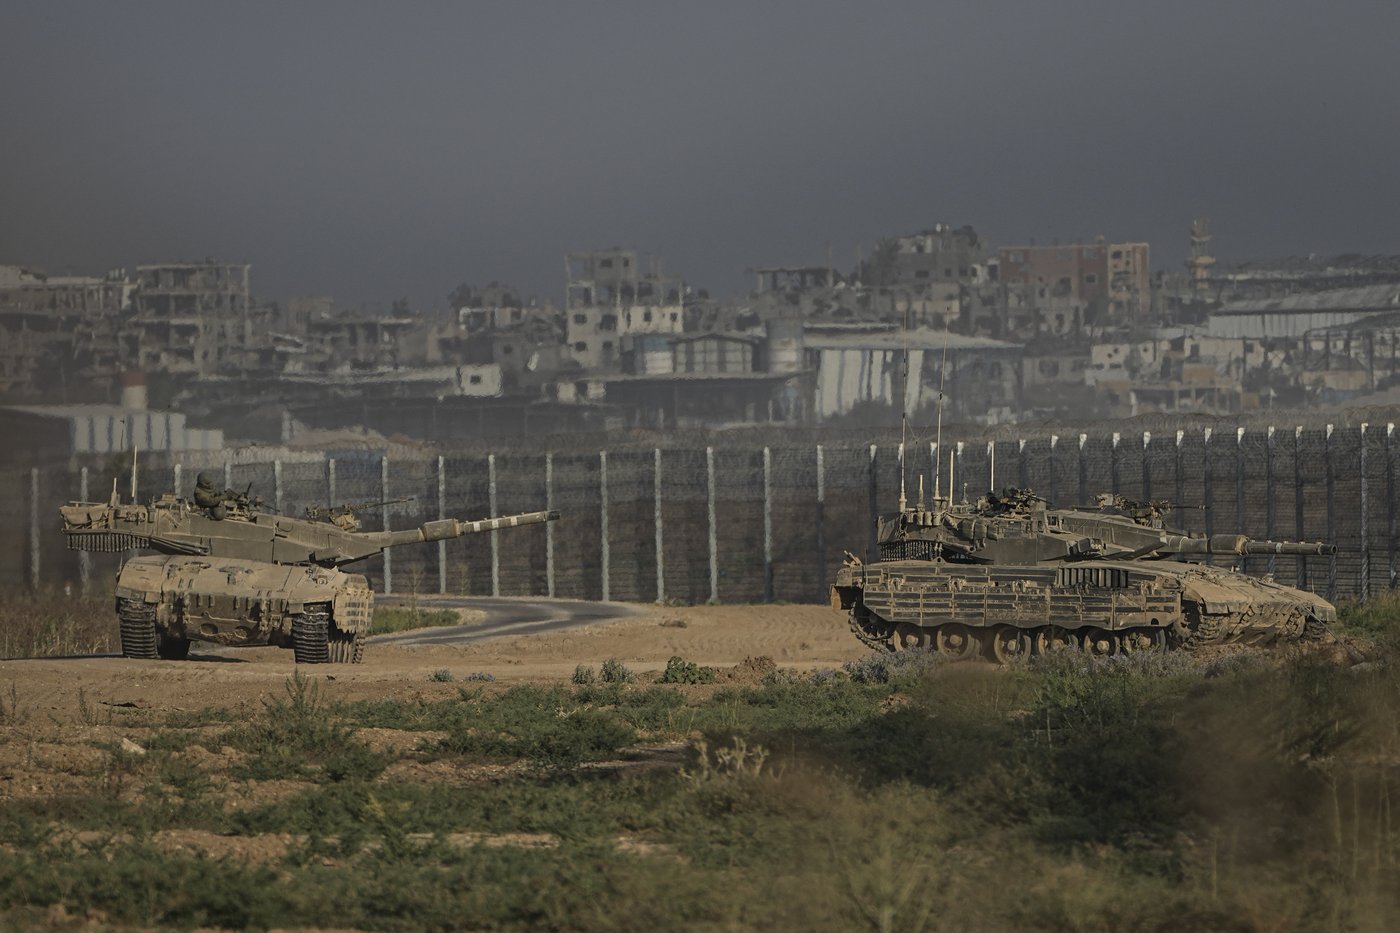 Les pourparlers en vue d’un cessez-le-feu à Gaza se poursuivent, selon le Hamas